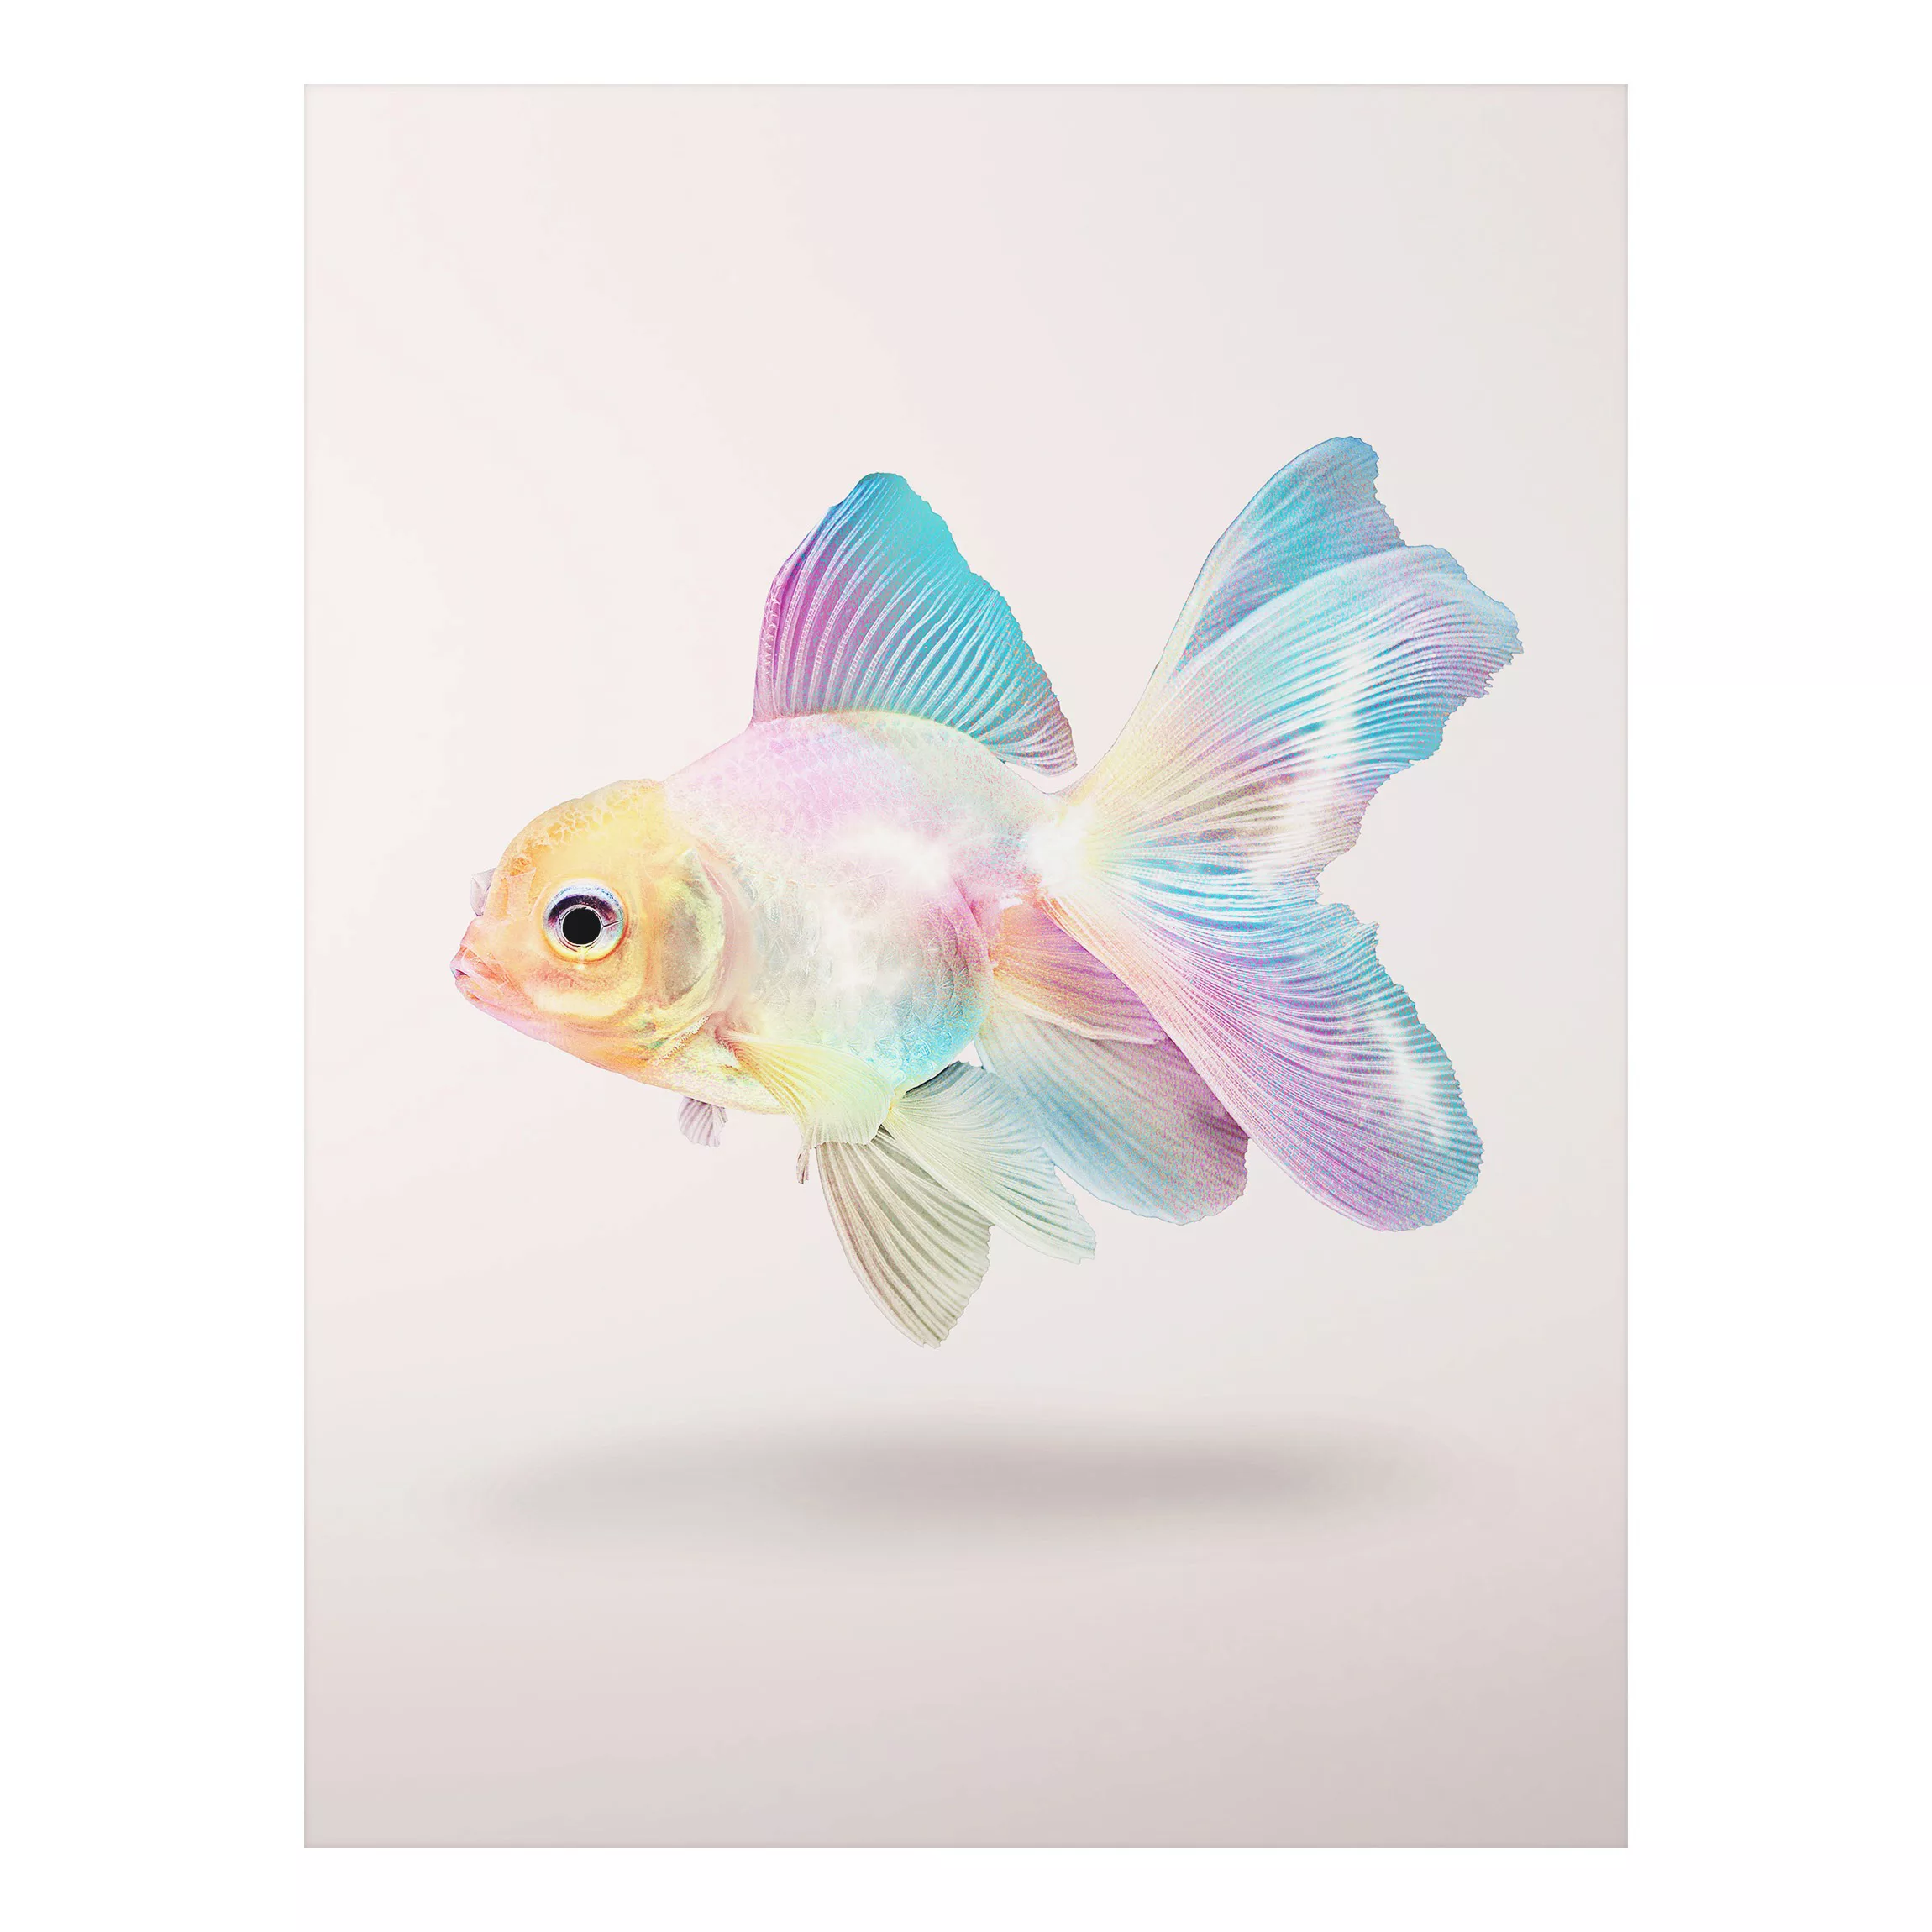 Alu-Dibond Bild Kunstdruck - Hochformat 3:4 Fisch in Pastell günstig online kaufen